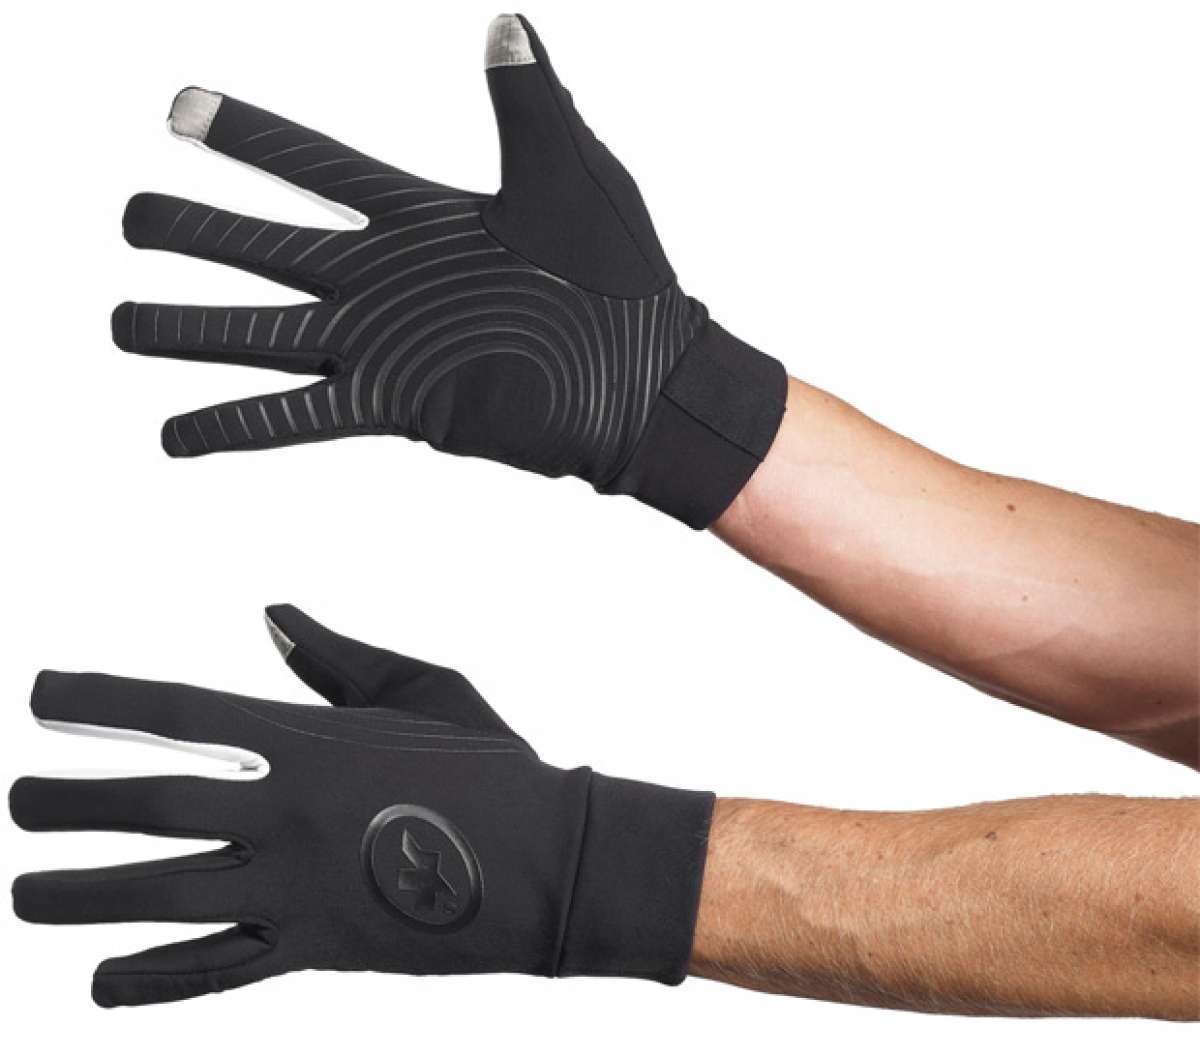 Nueva gama de guantes y calcetines de invierno de Assos